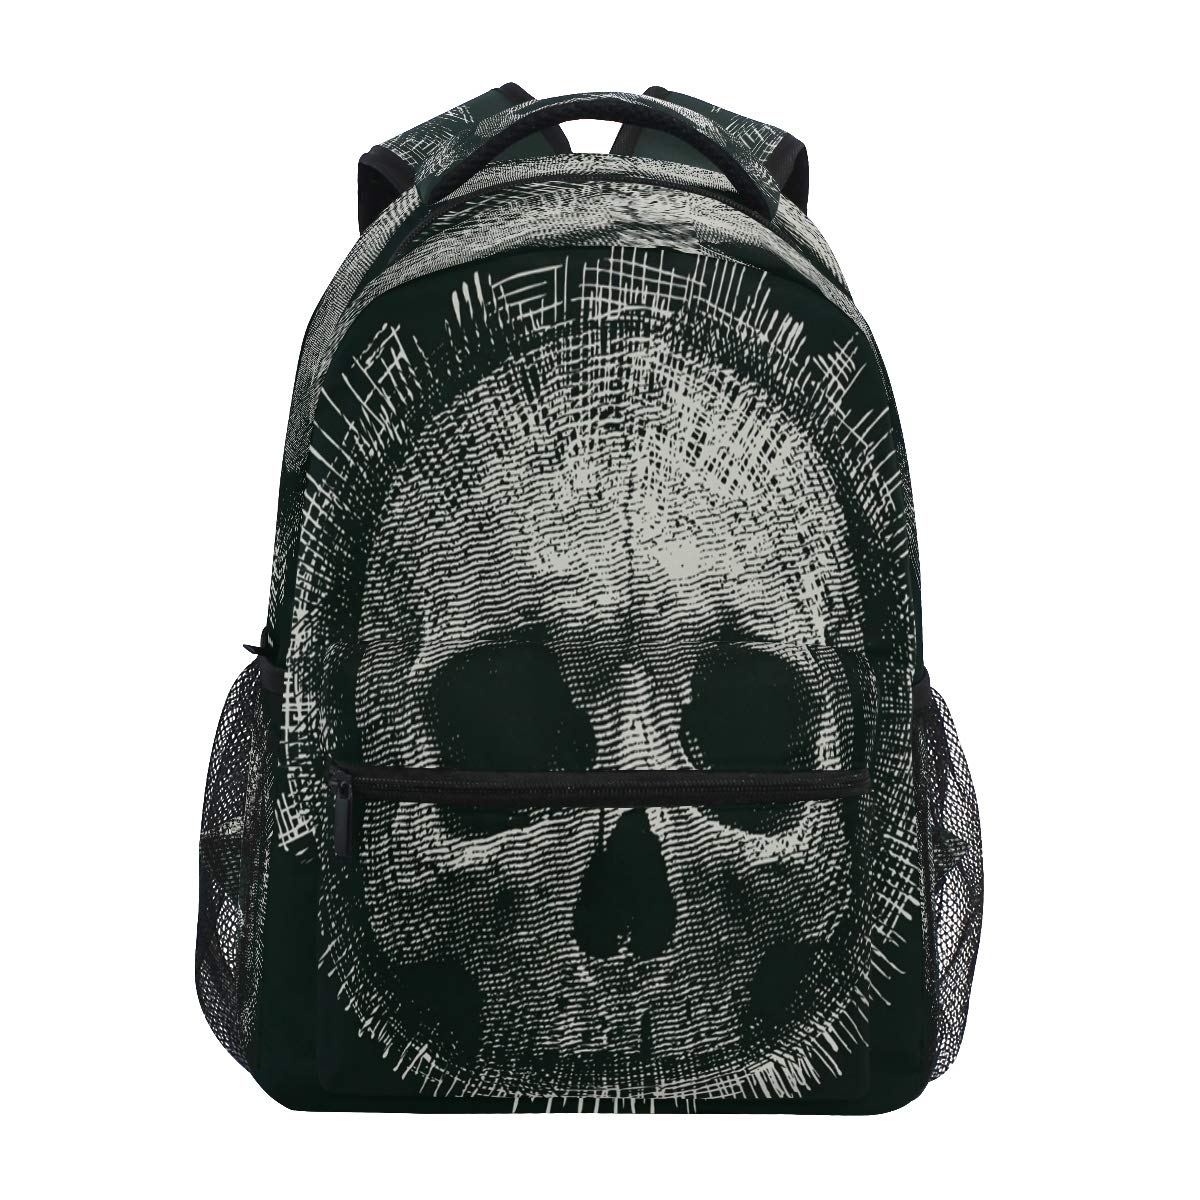 Rucksack mit Totenkopf-Motiv, für Schule, Computer, Bücher, Reisen, Wandern, Camping, Tagesrucksack für Mädchen, Jungen, Männer und Frauen